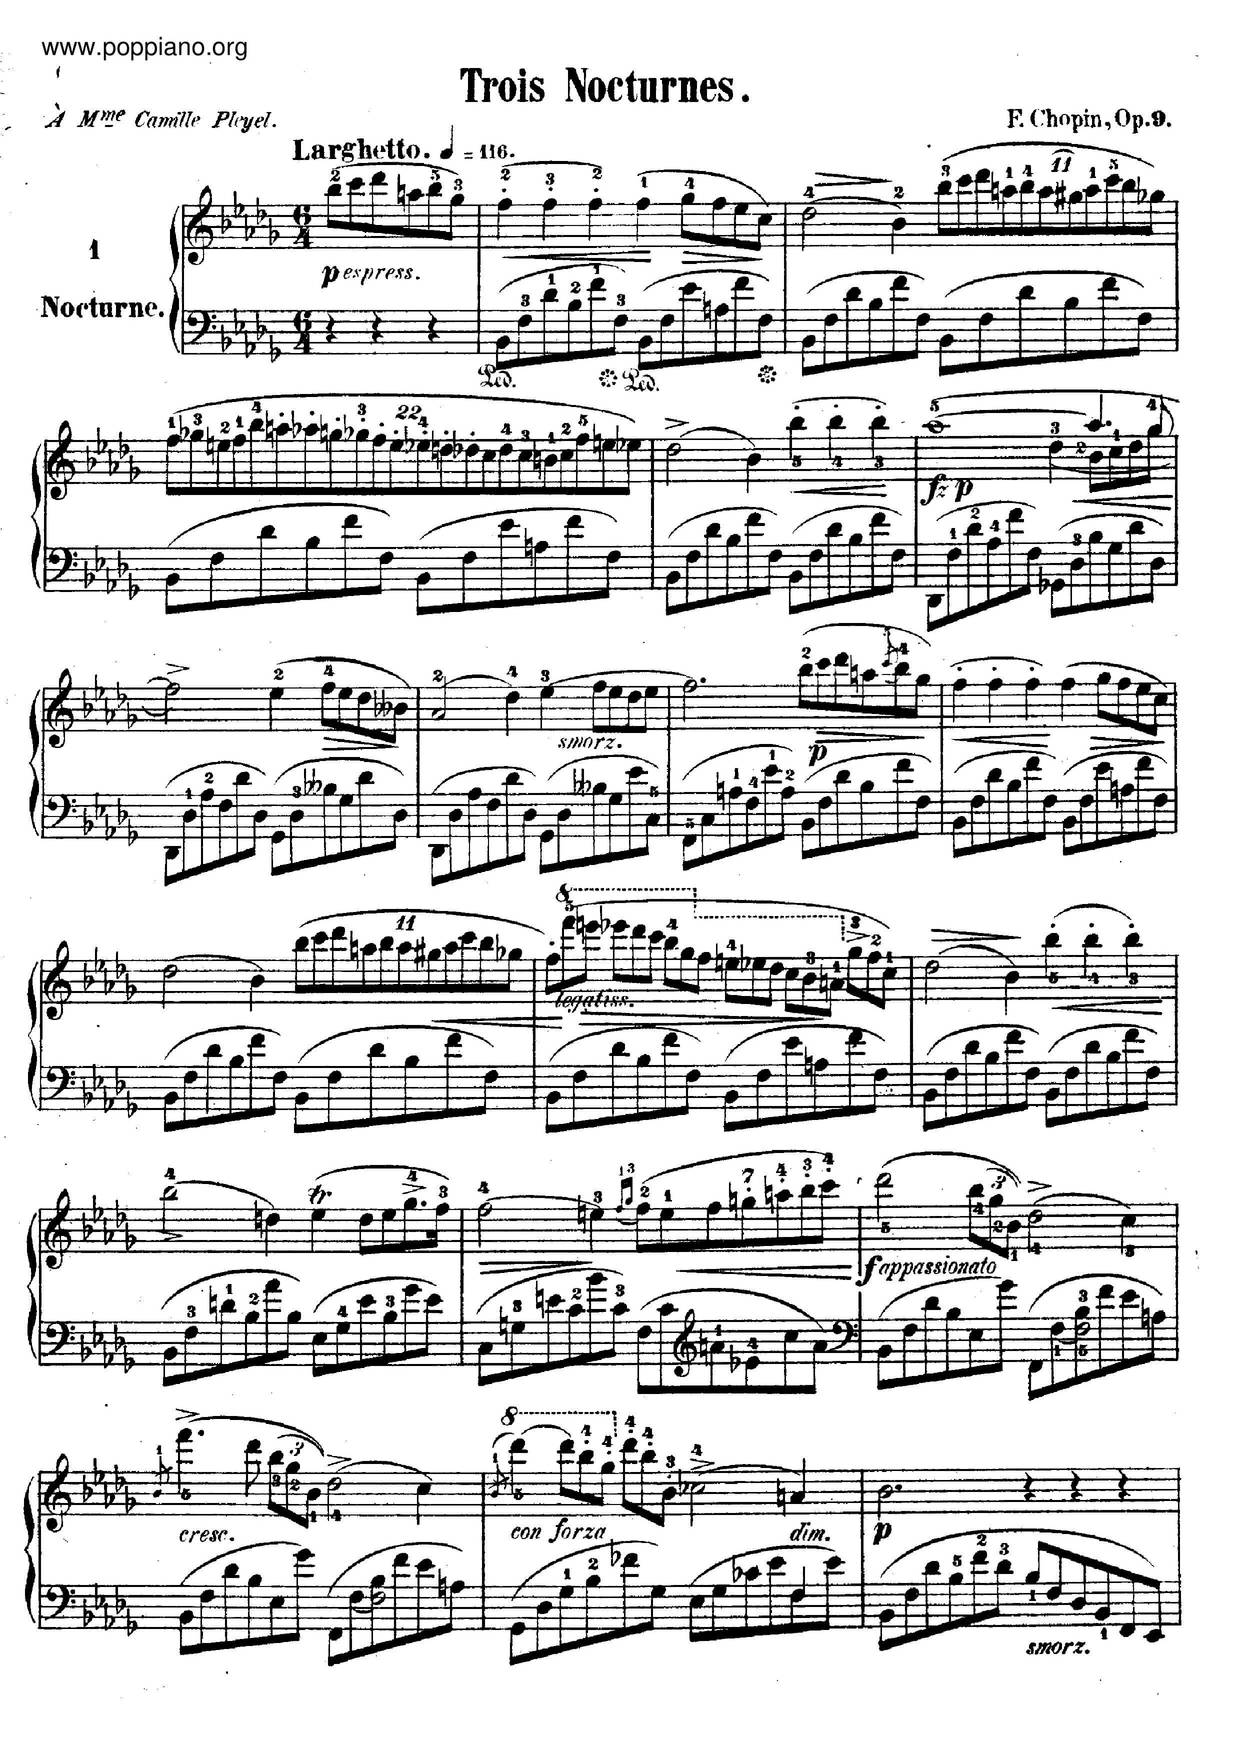 Nocturne Op. 9 No. 1 in B flat minor琴谱